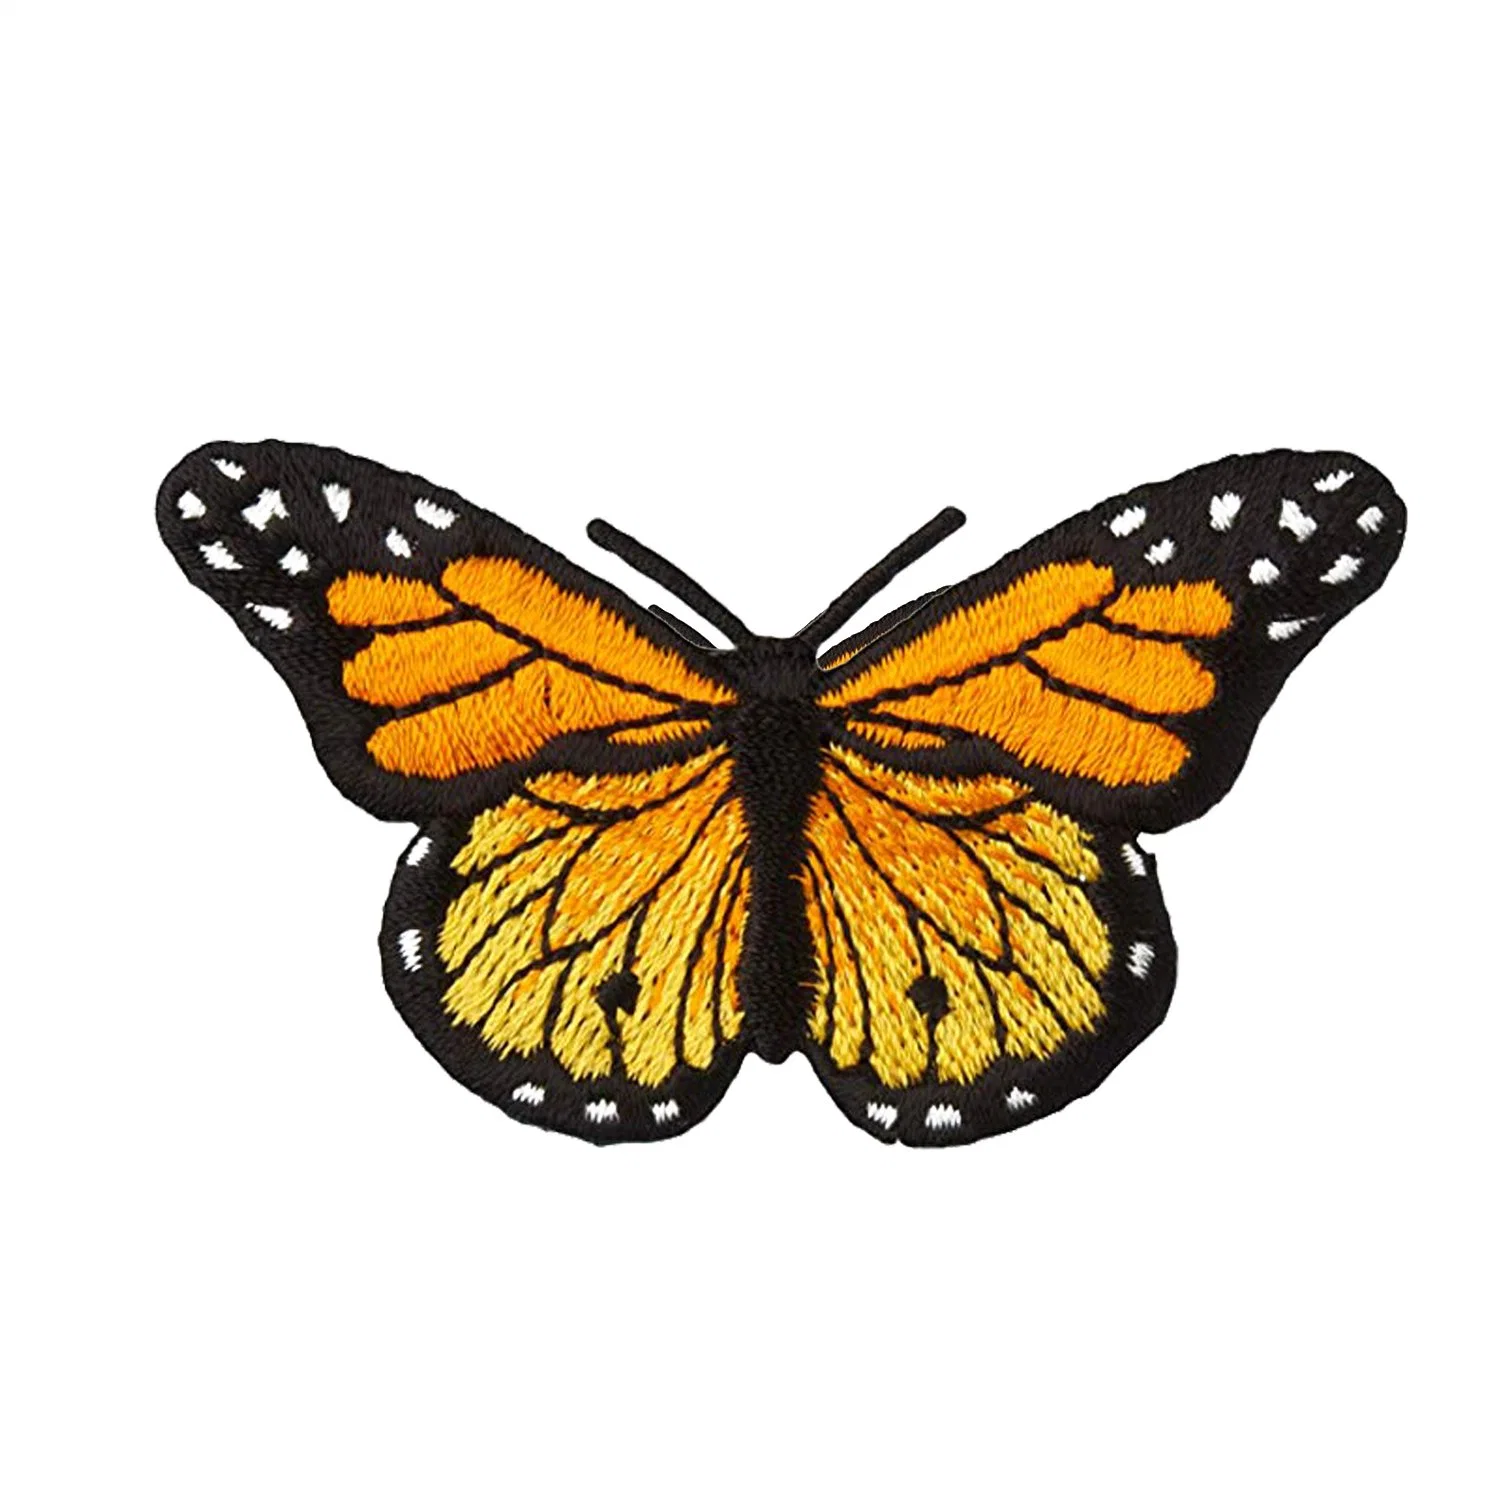 Patch de borboletas coloridas em ferro/costurar sobre patch Patch emblema bordado Applique